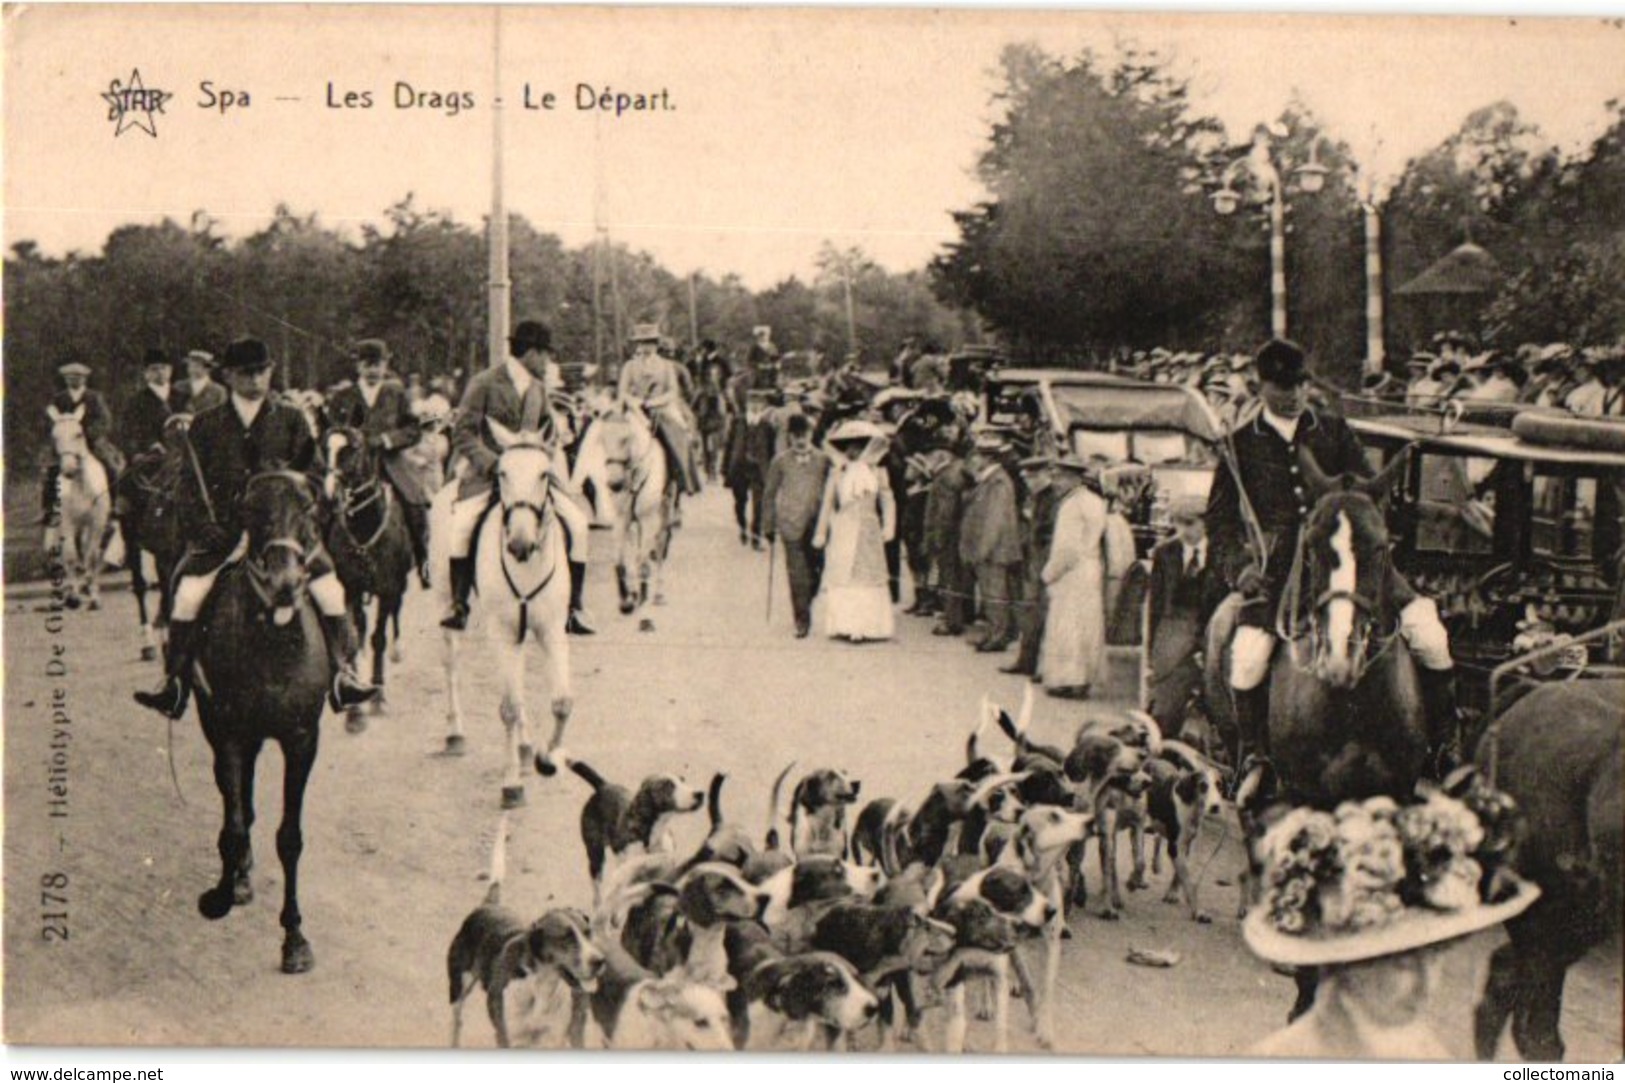 36 Postkaarten Chasse, Dogs, Dynastie, 4 Horses Chariots, C1900, Hund  Chien De Chasse DRAGS Chasse Jachtpartij Paarden - Politieke En Militaire Mannen